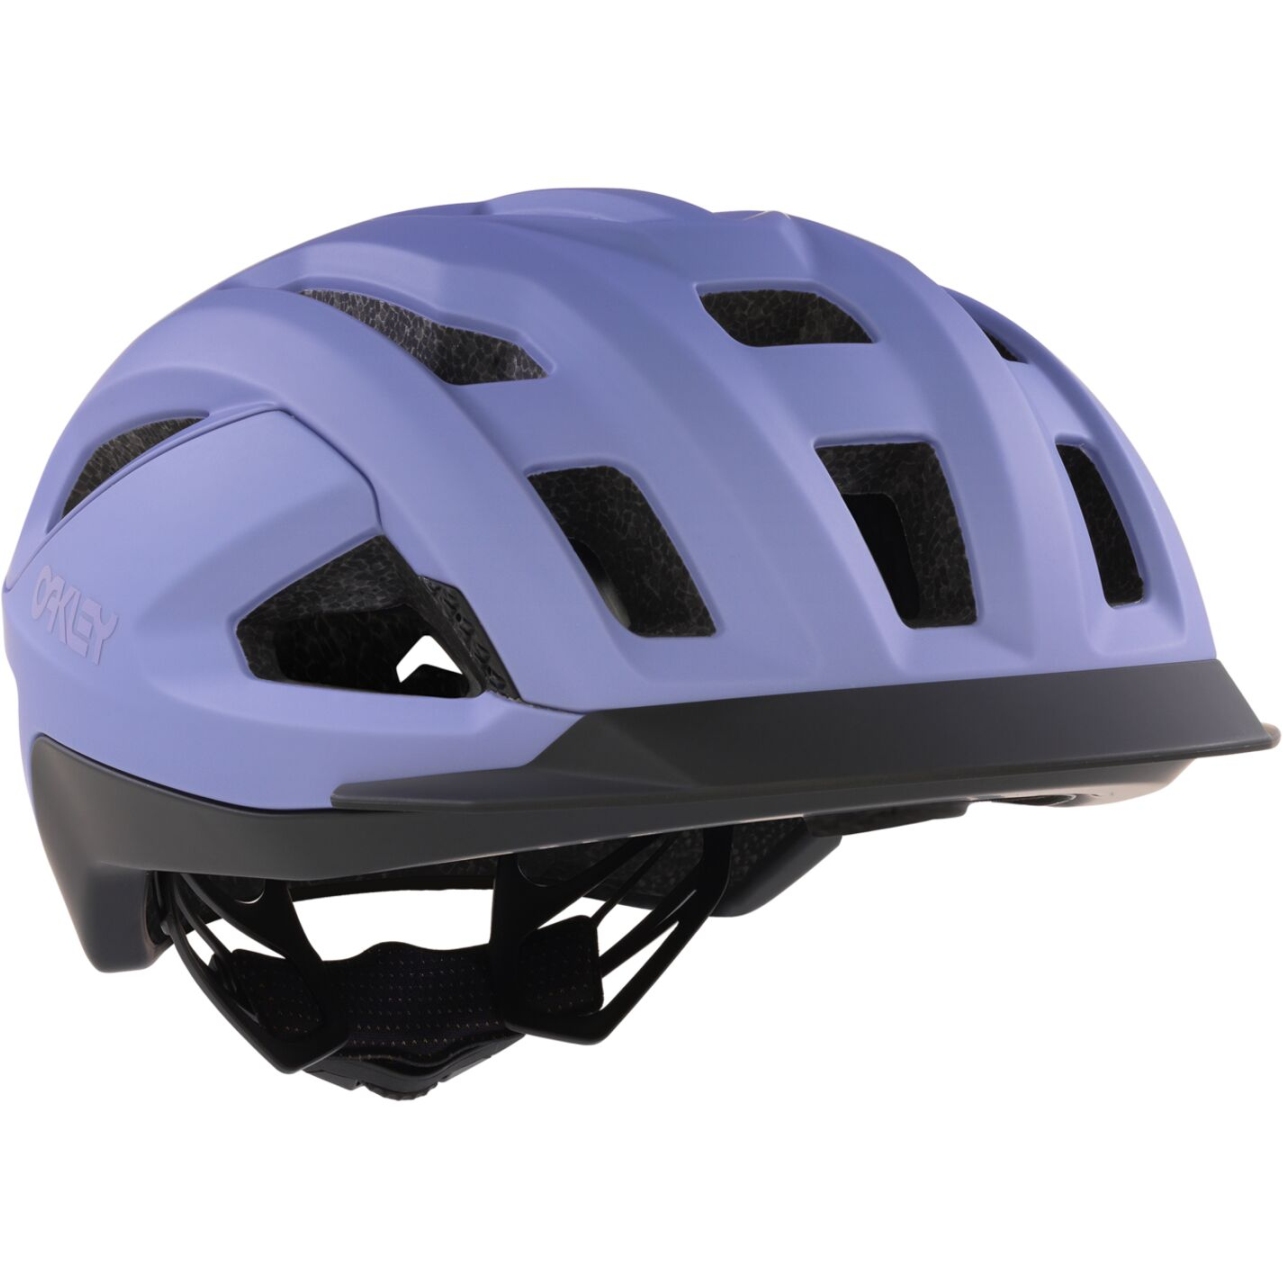 Produktbild von Oakley ARO3 Allroad MIPS Helm - Matte Lilac